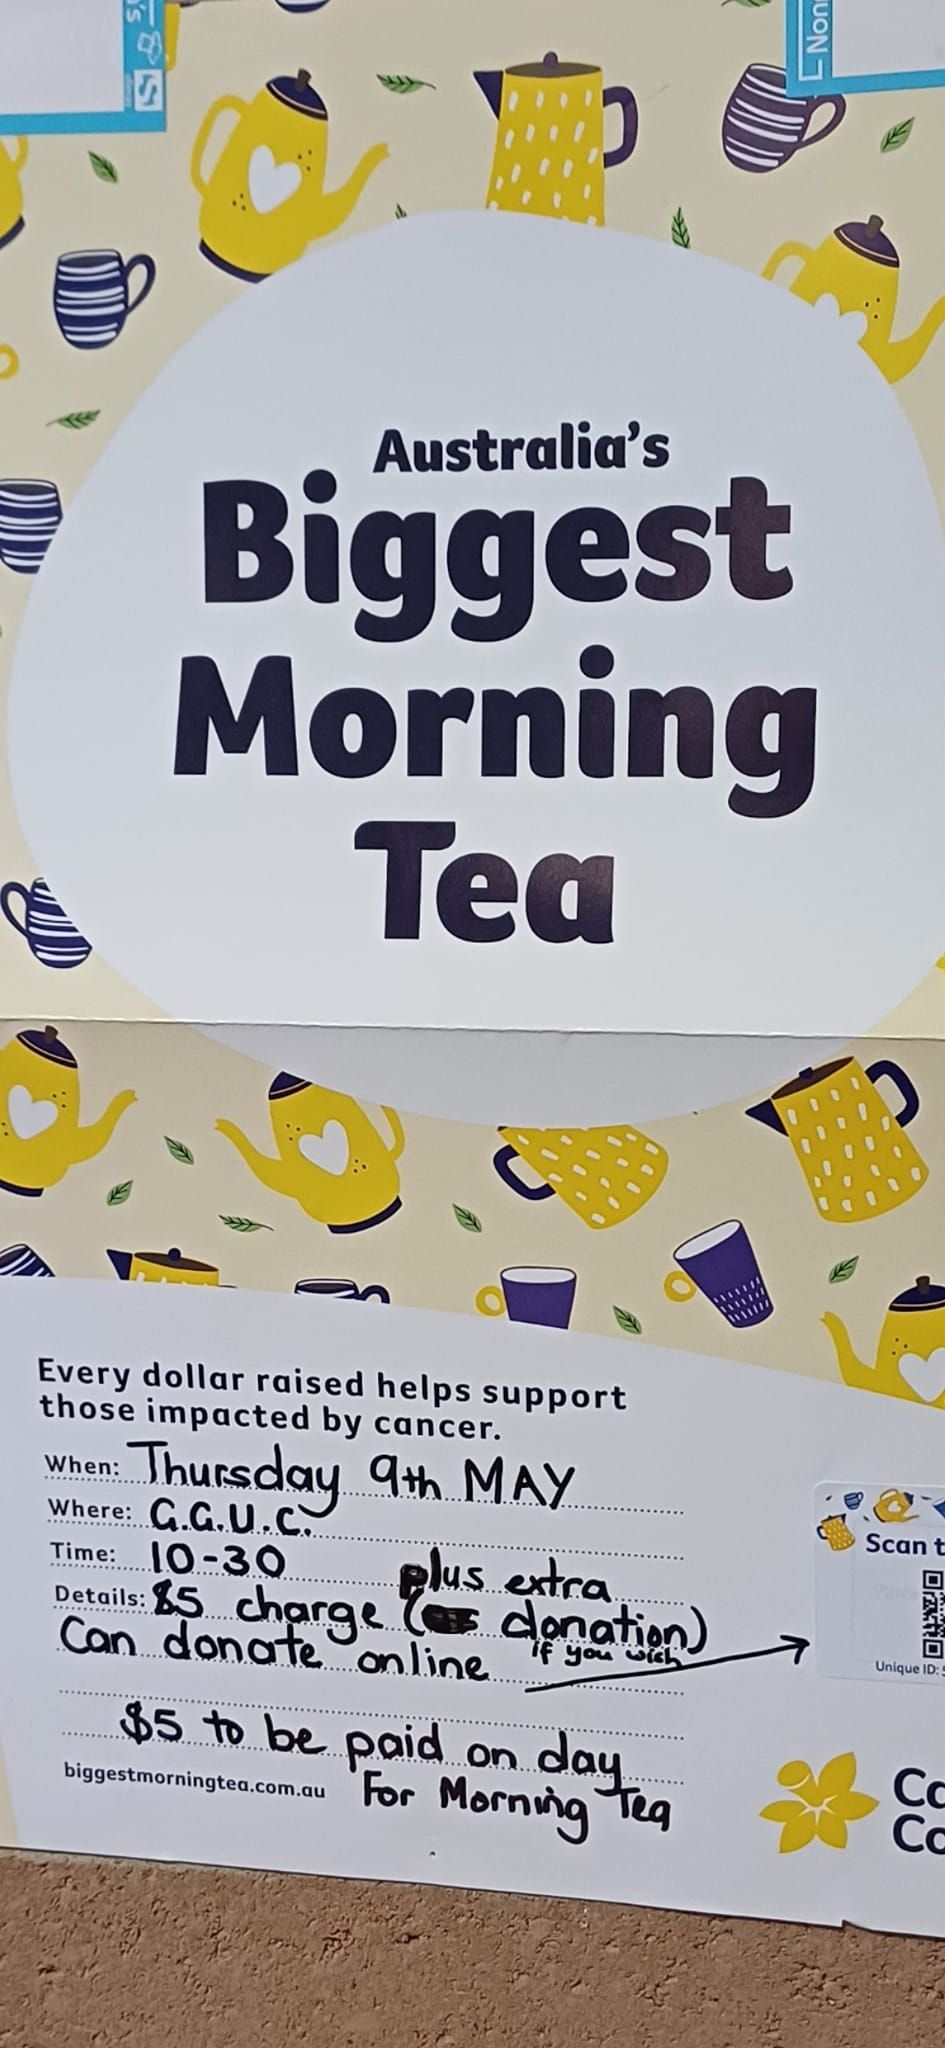 AUSTRALIAS BIGGEST MORNING TEA